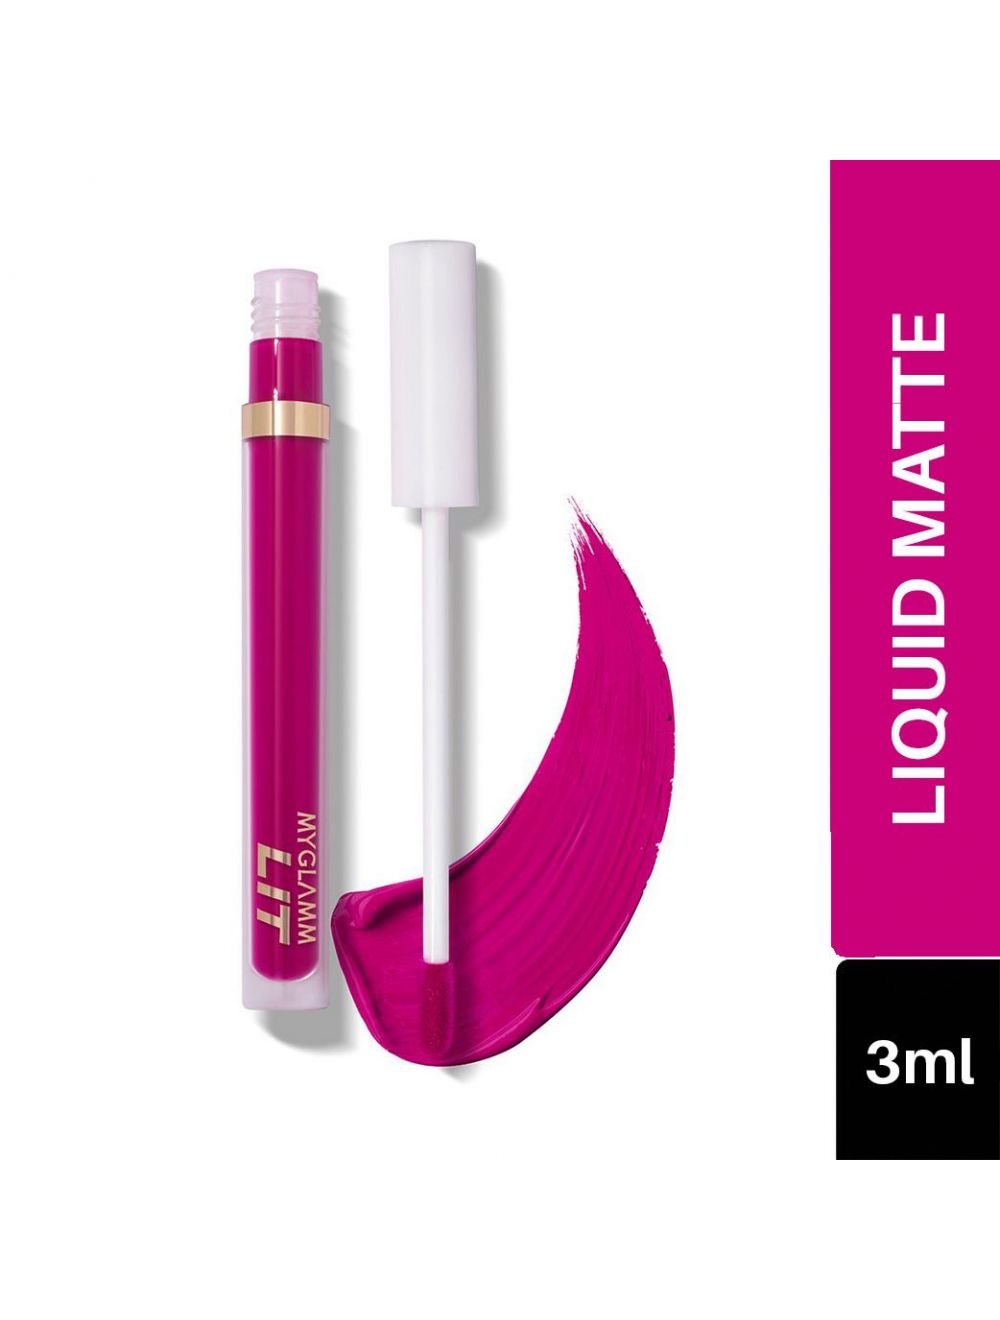 MyGlamm Lit Liquid Matte Lipstick - Cuffing